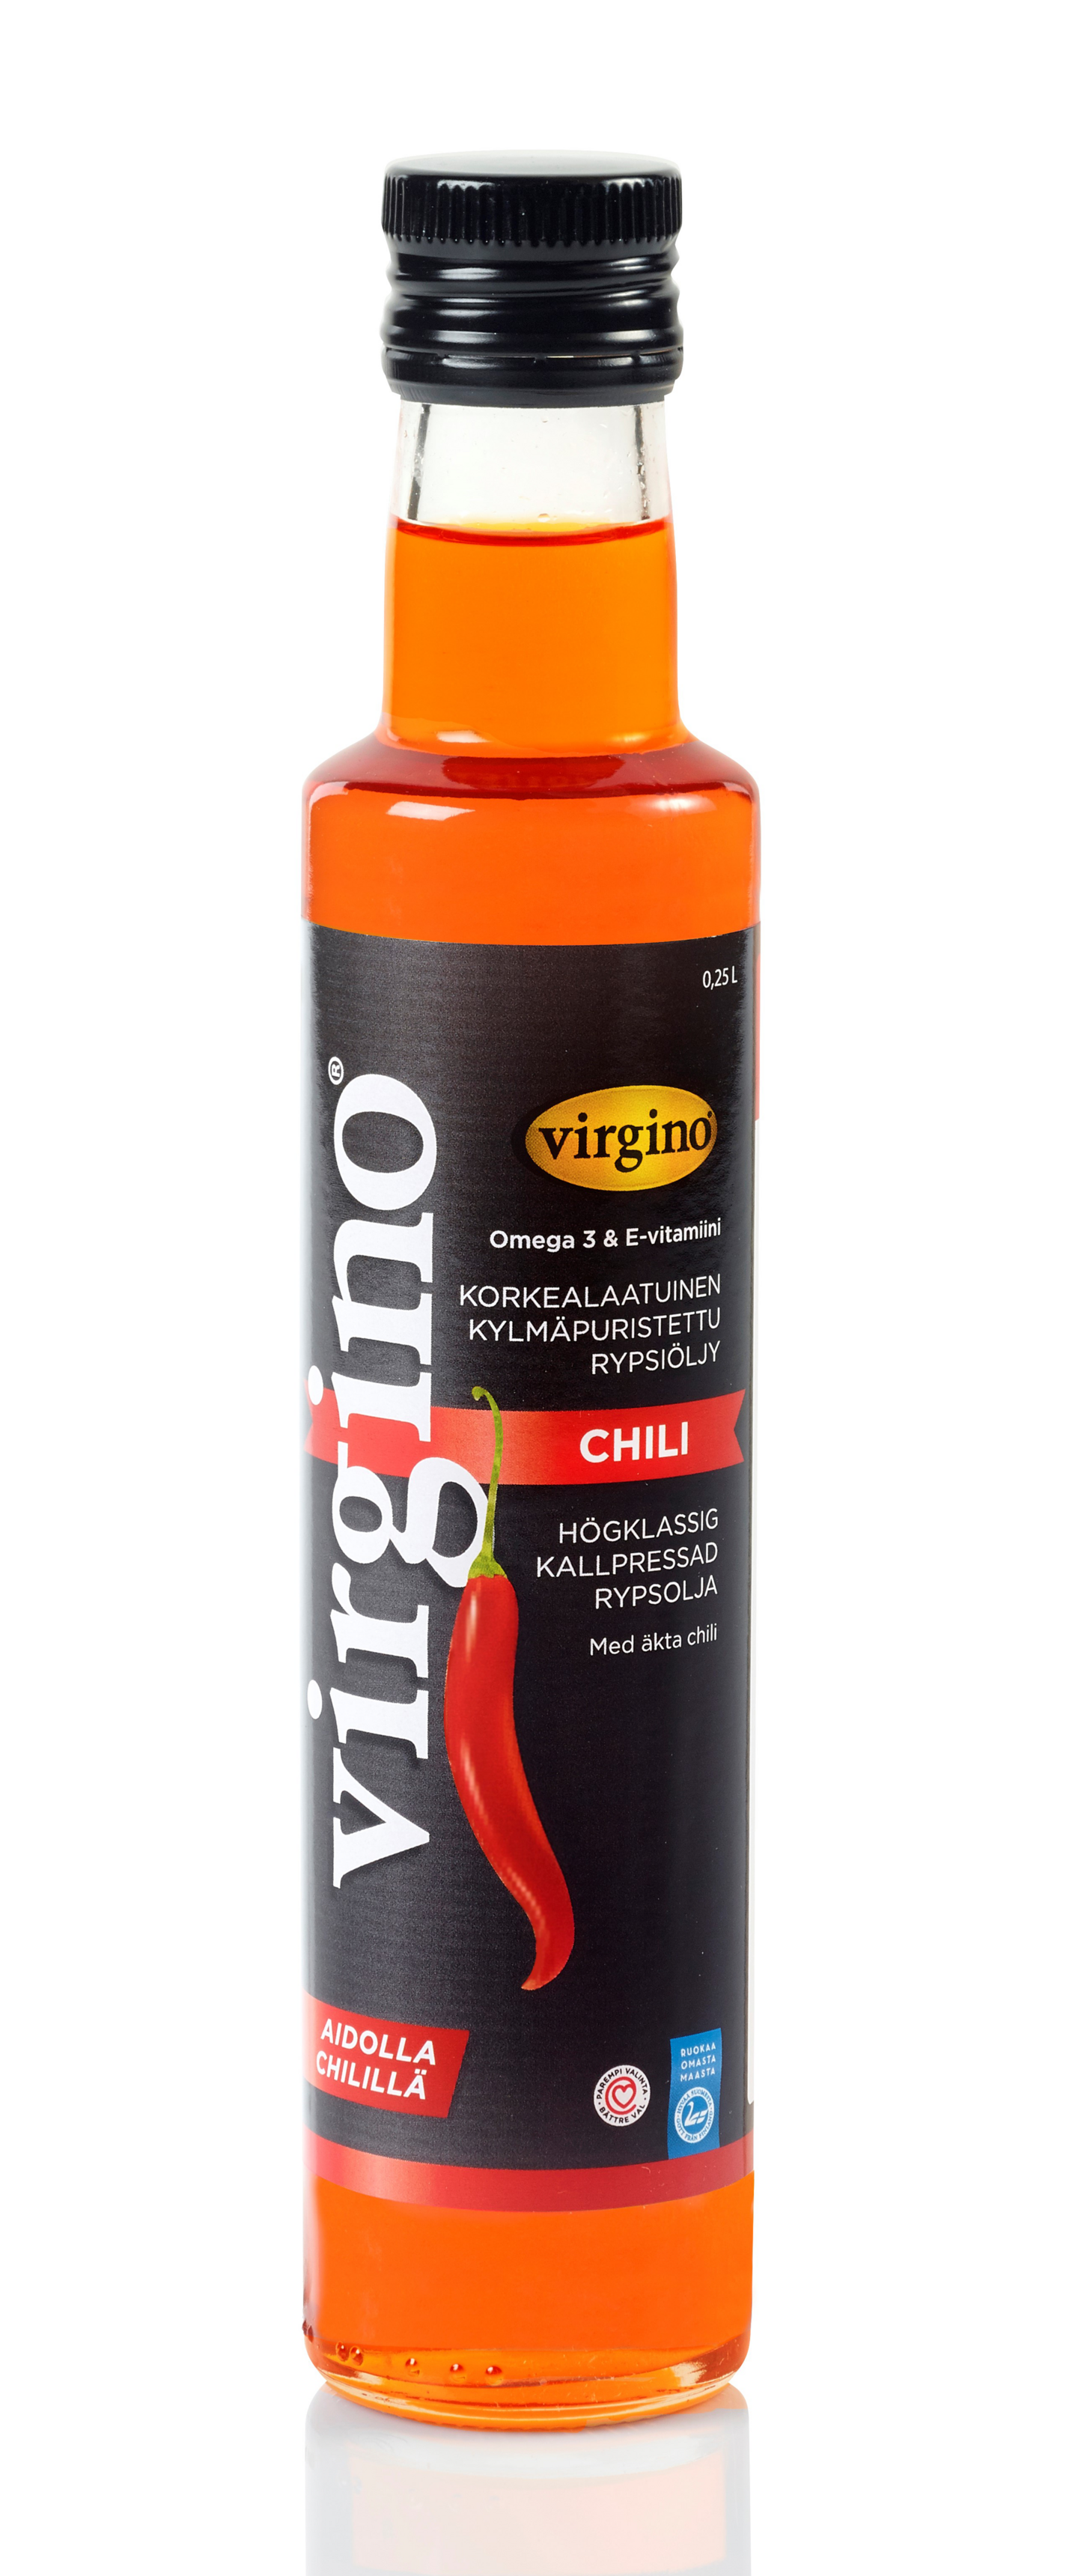 Virgino kylmäpuristettu chilirypsiöljy 0,25l | K-Ruoka Verkkokauppa